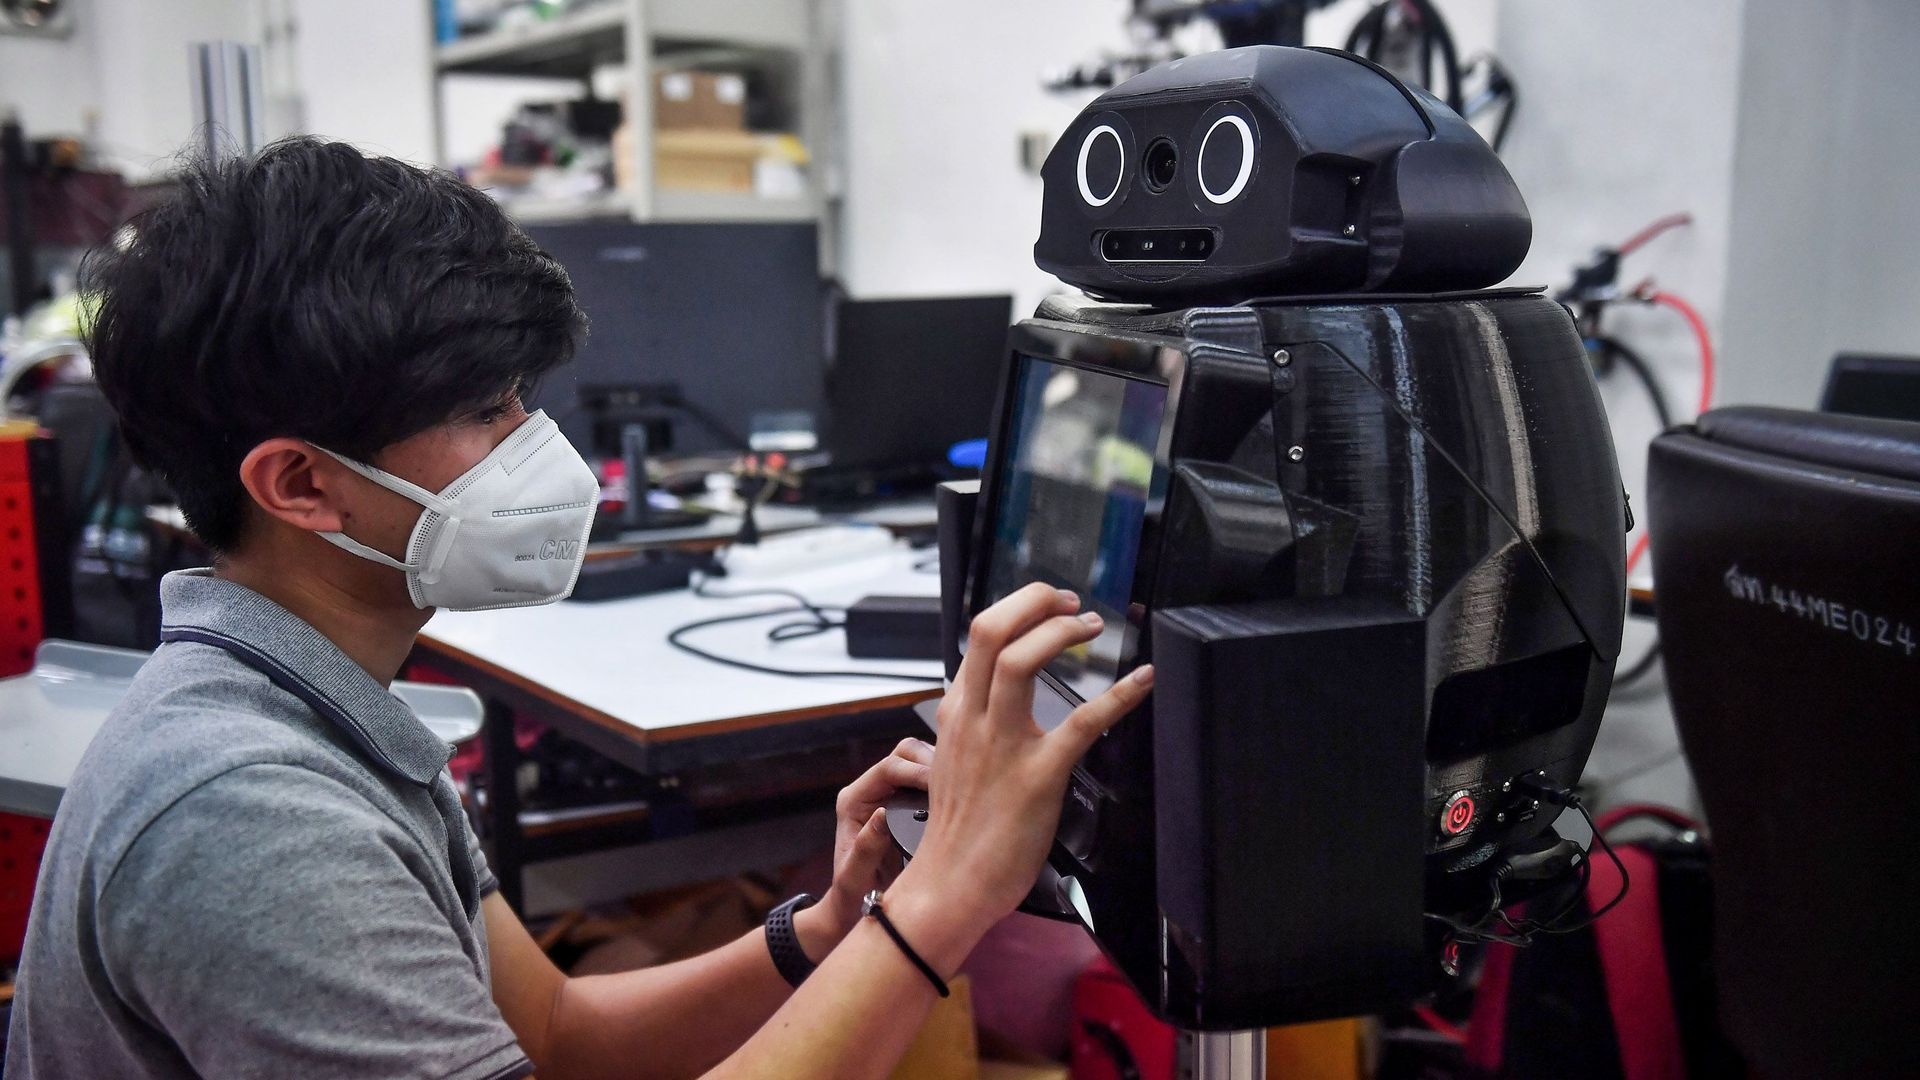 La Thaïlande déploie des robots dans ses hôpitaux pour aider et protéger le personnel hospitalier dans sa lutte contre la pandémie.